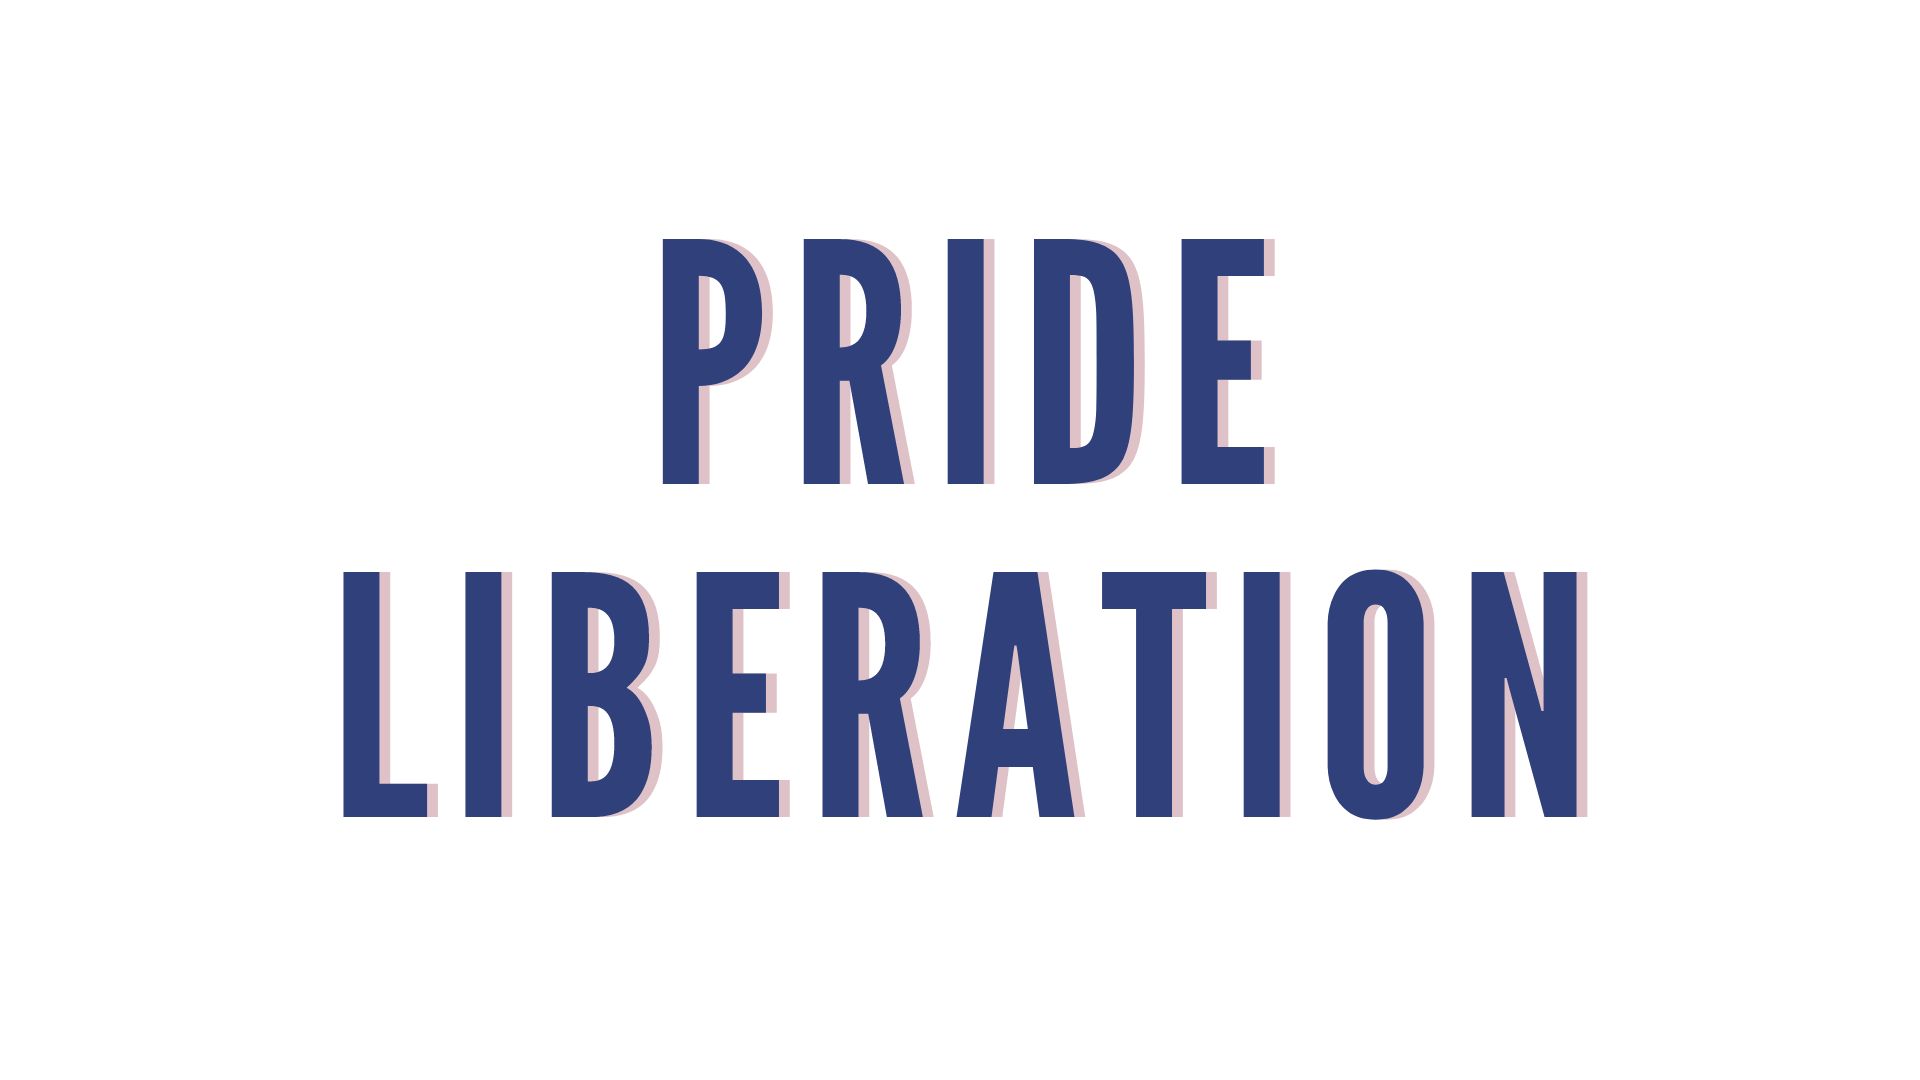 Pride Liberation